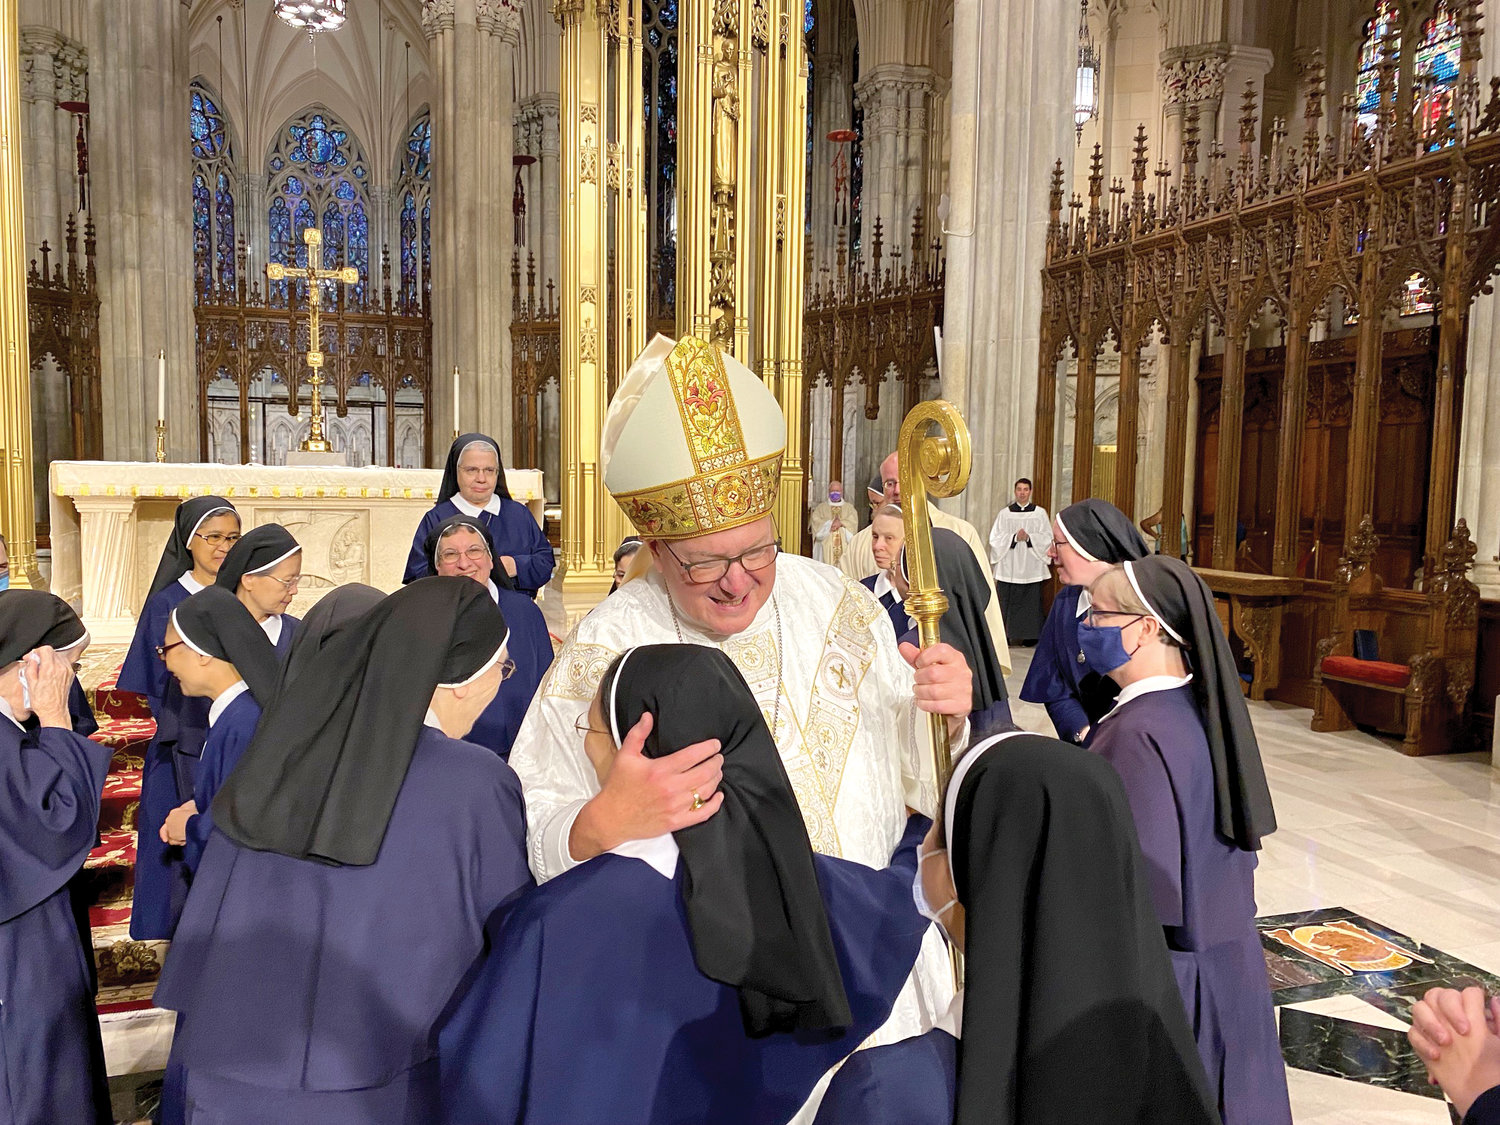 Cardinal Dolan warmly greets sisters.